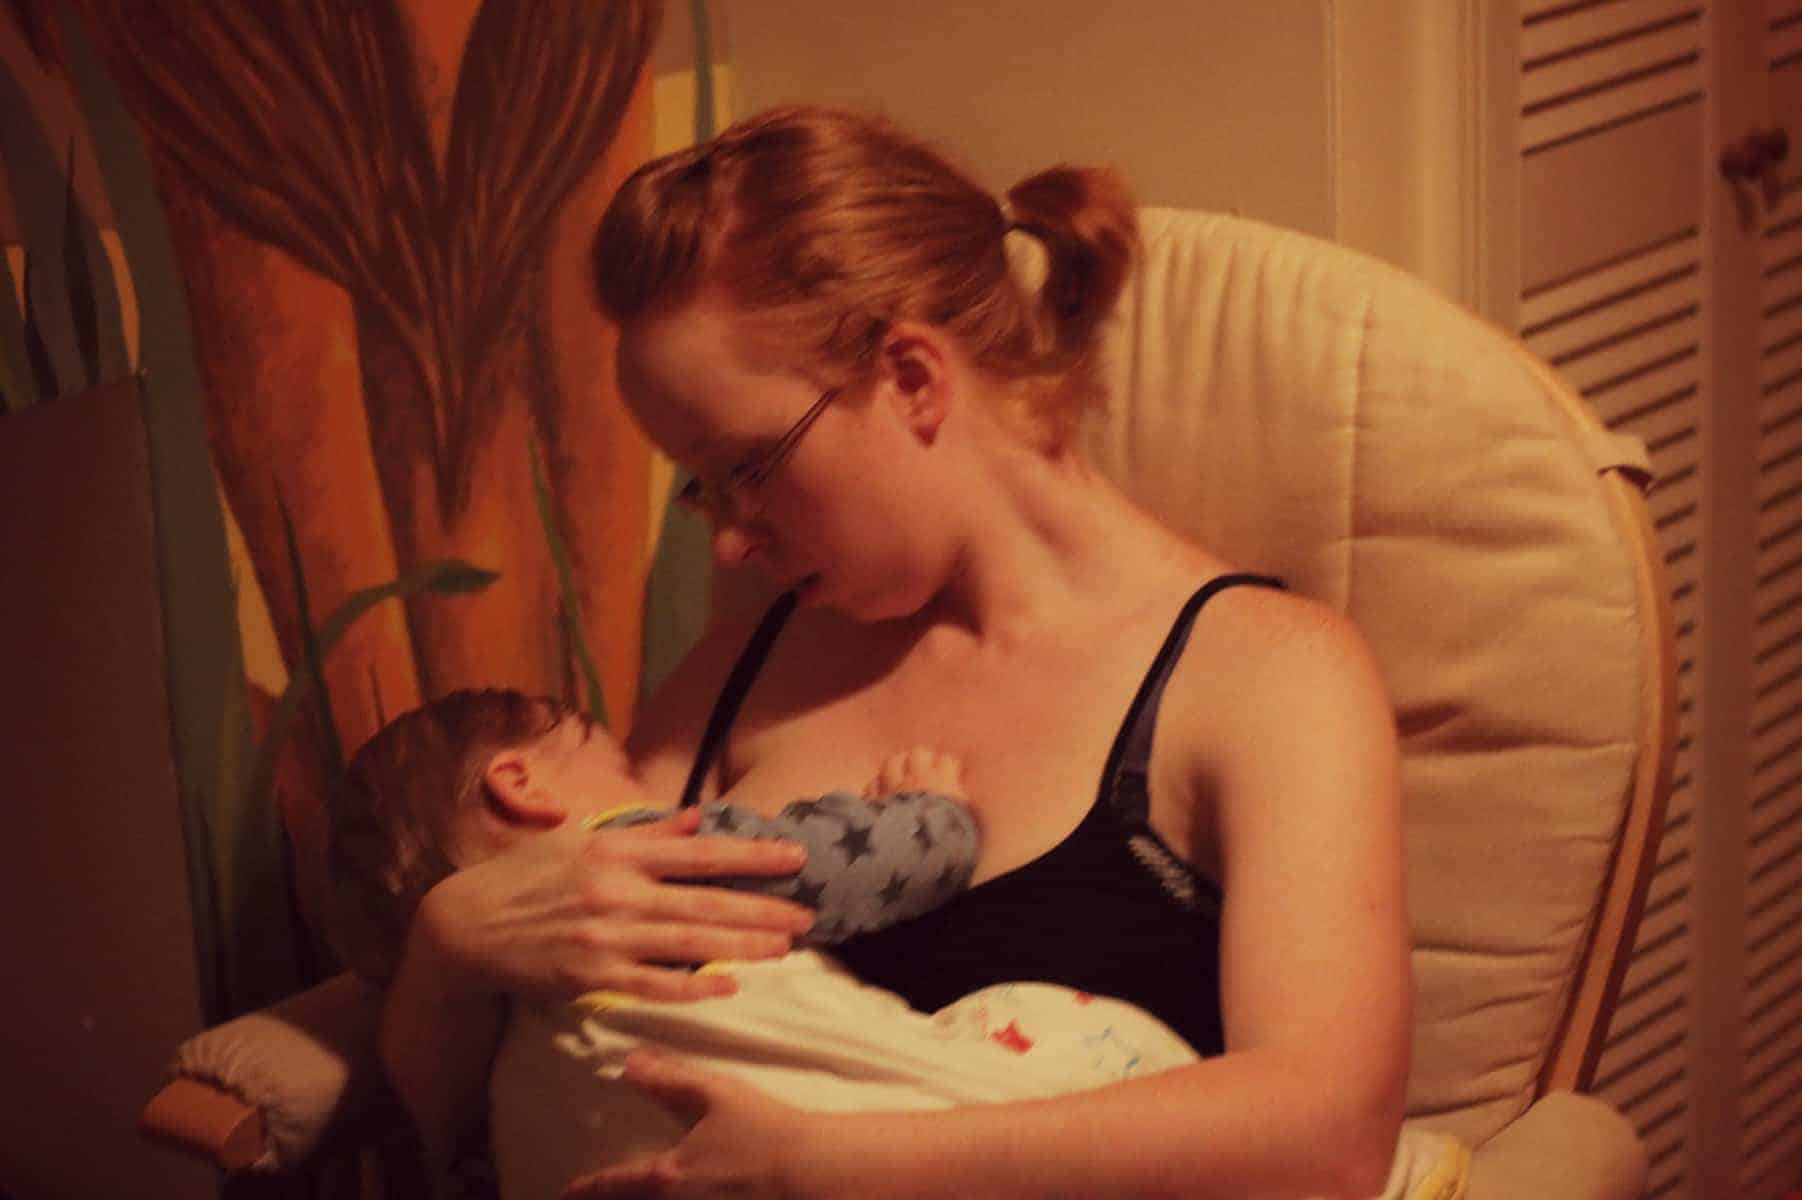 Breastfeeding - The Ordinary Moments